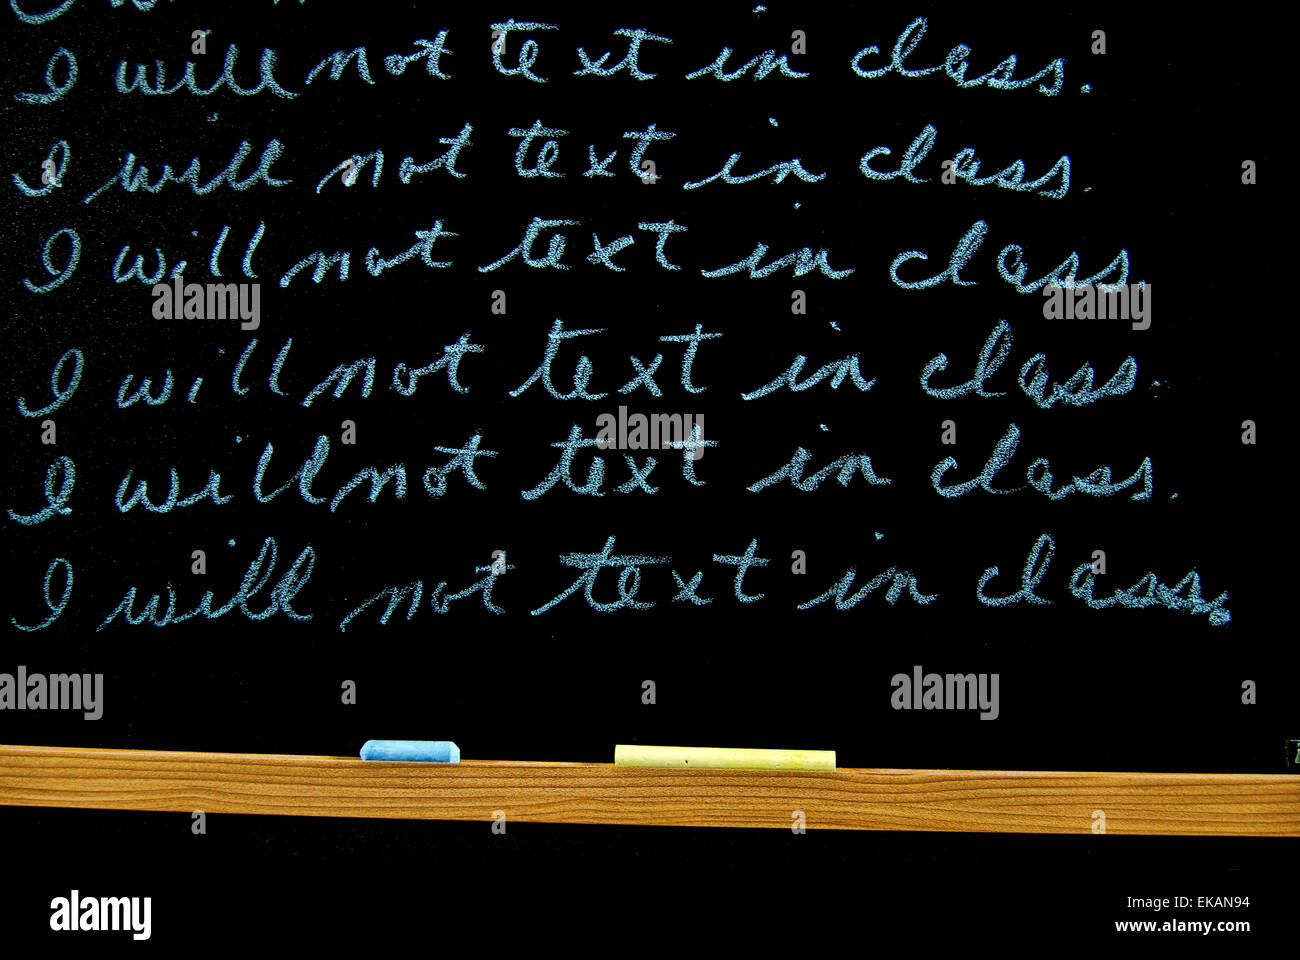 Linien zur Strafe auf eine schwarze Tafel mit Kreide geschrieben  Stockfotografie - Alamy